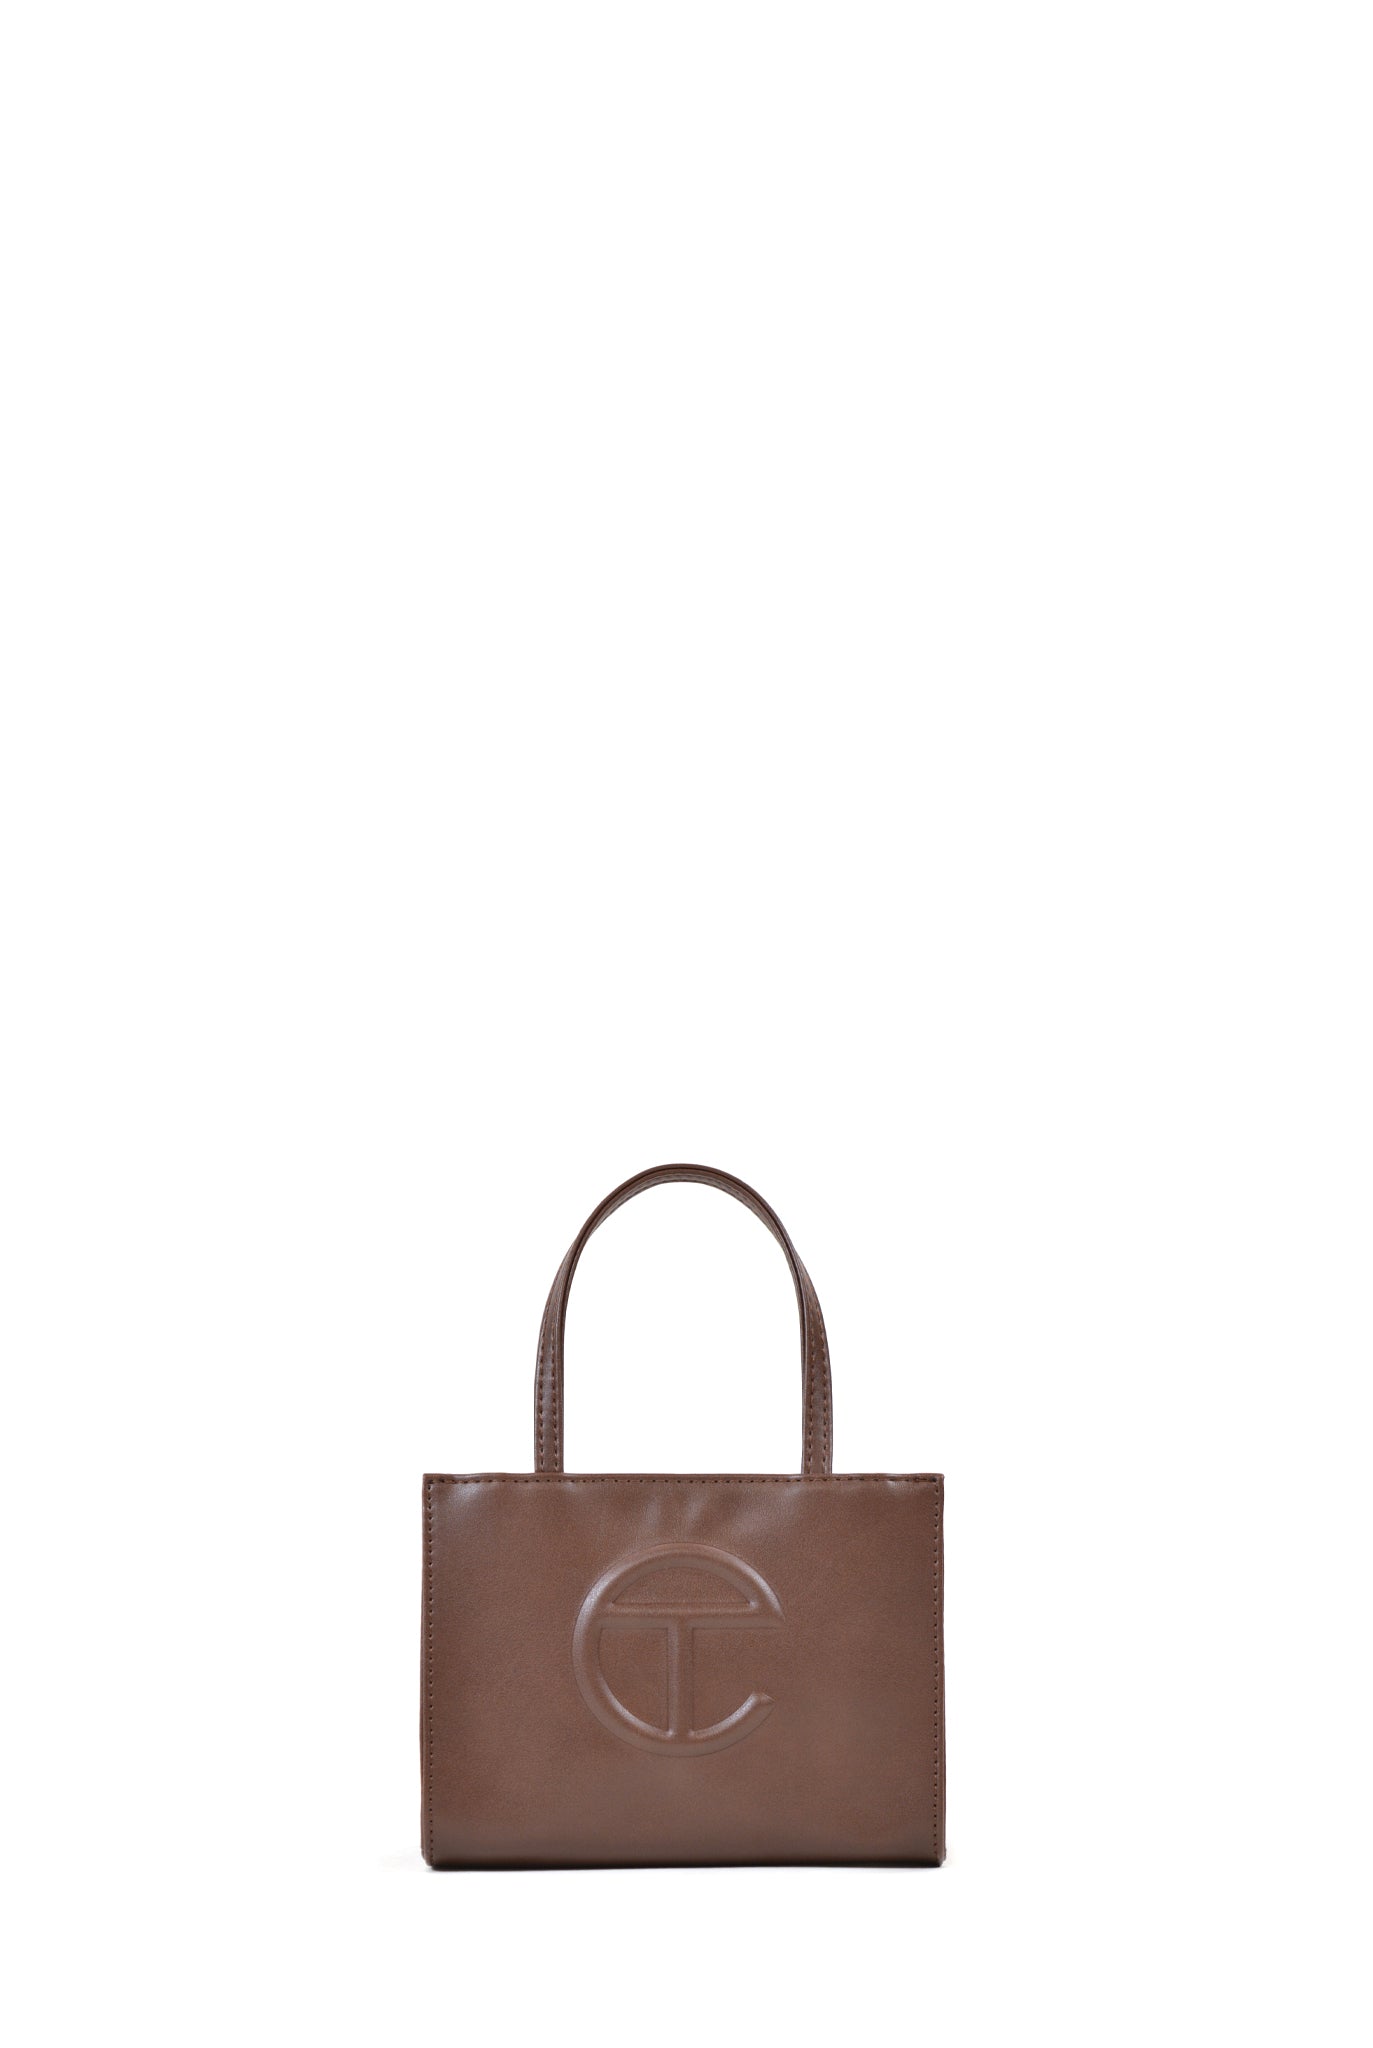 Telfar Small Shopping Bag, Brown